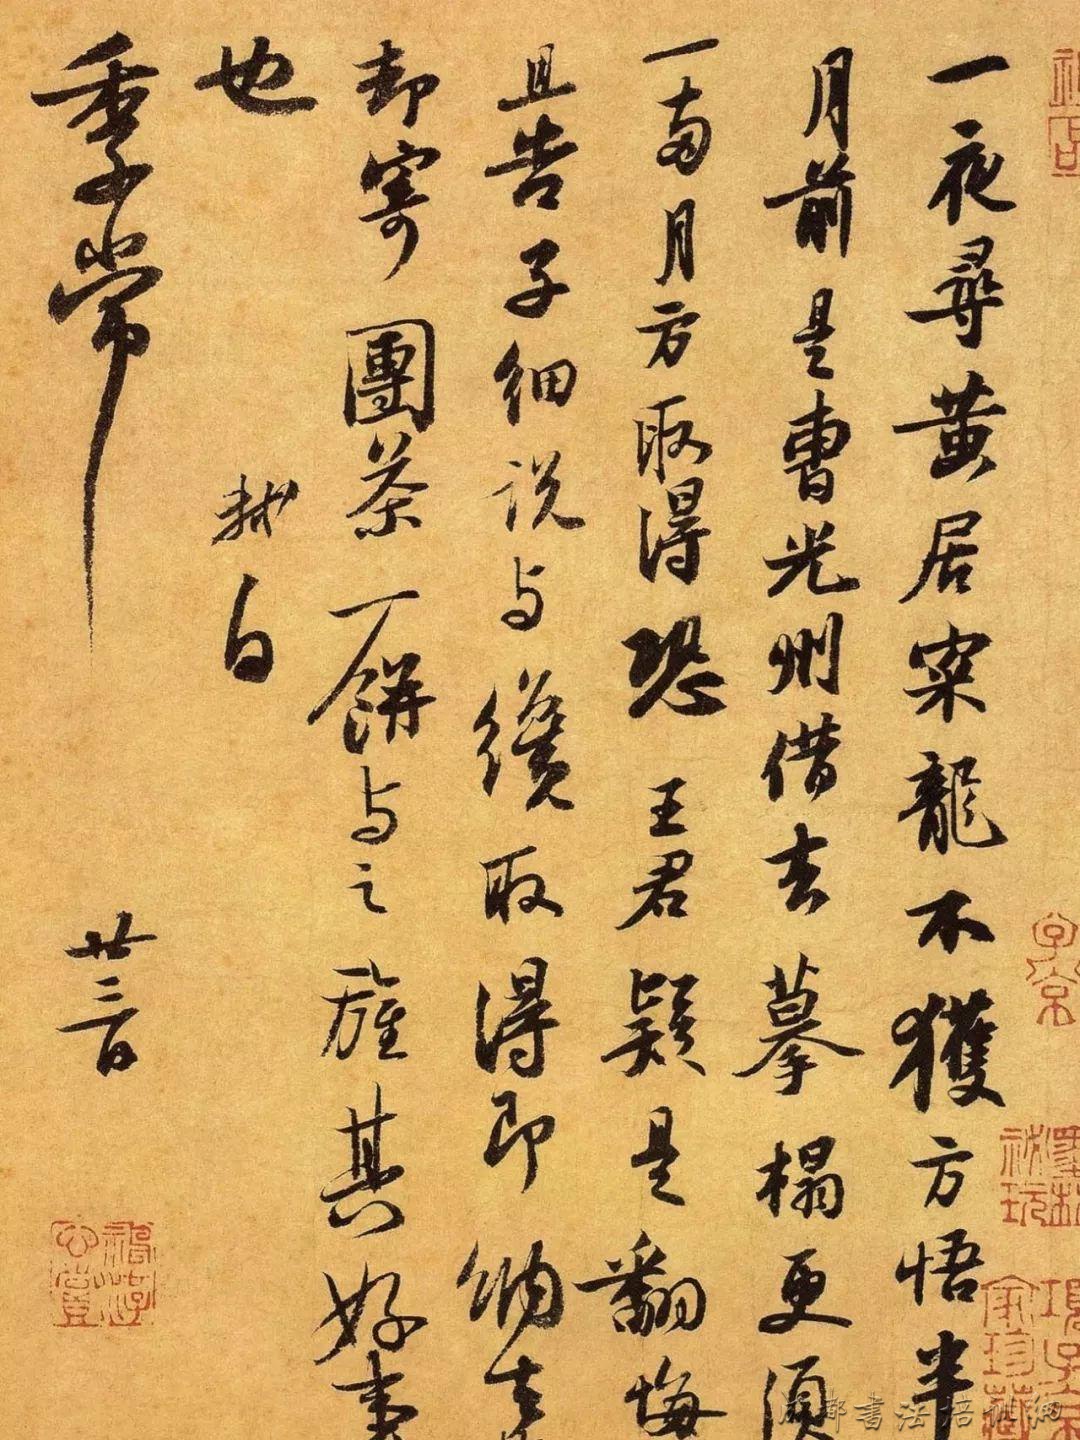 此贴是苏轼书法风格转型期间的杰出代表作.